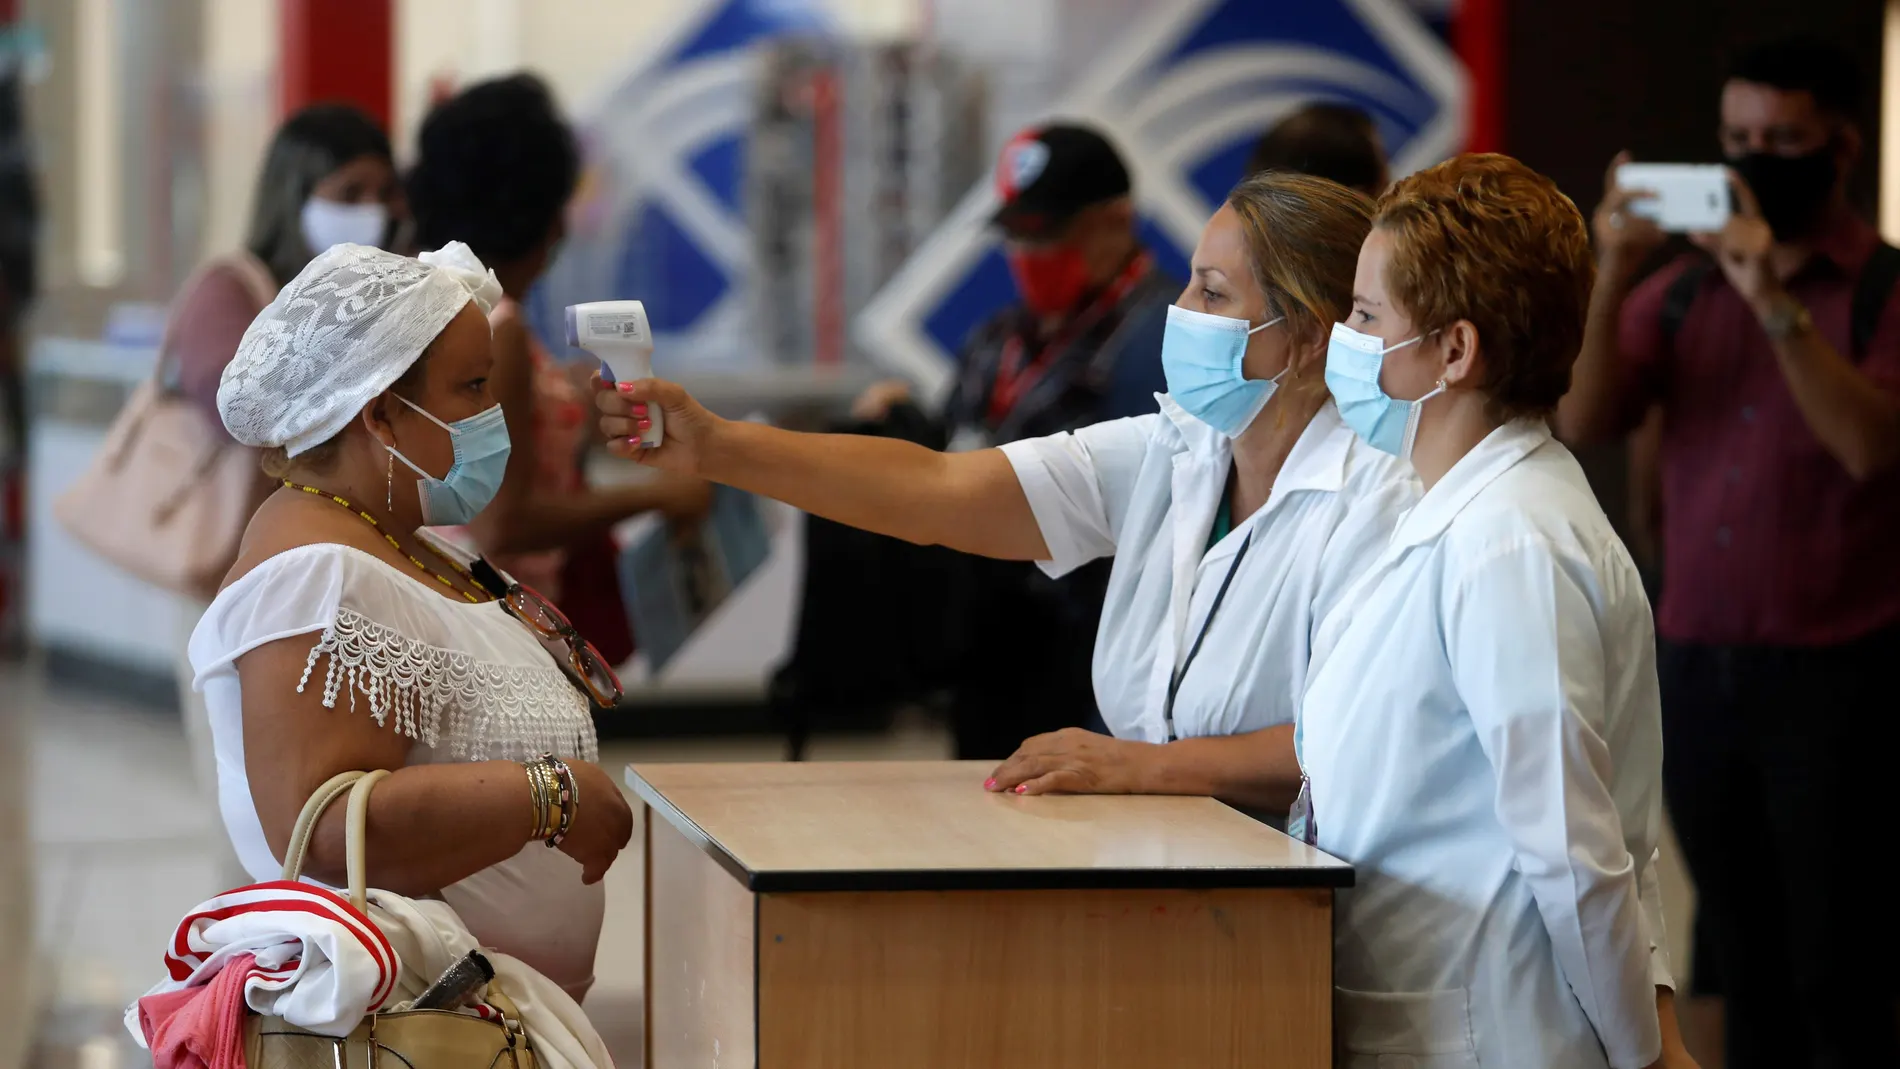 AME8519. LA HABANA (CUBA), 15/11/2020.- Trabajadoras del aeropuerto de La Habana toman la temperatura a una mujer en el primer día que reinicia las operaciones, suspendidas desde hace meses a causa de la pandemia, hoy en La Habana (CUBA). EFE/ Yander Zamora